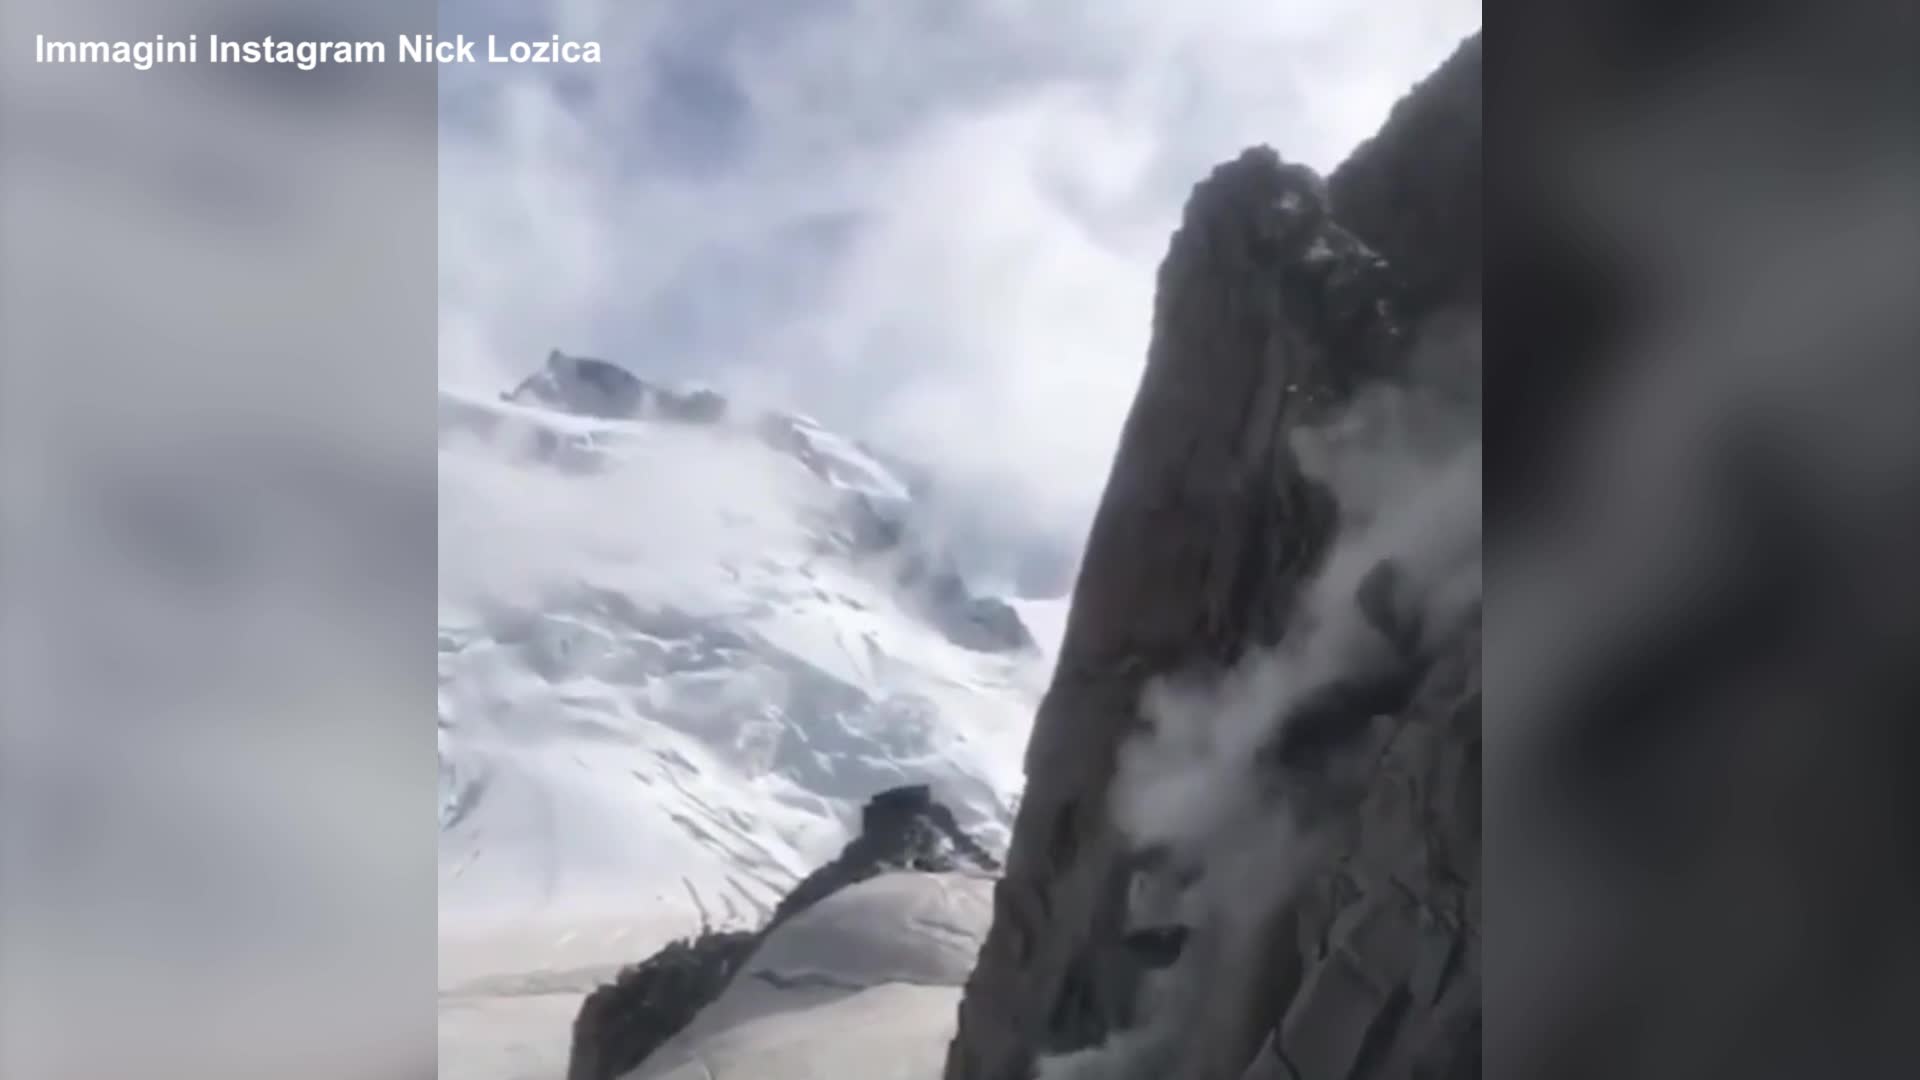 Maxi frana su Monte Bianco, 'blocchi di roccia grandi come case' - VIDEO